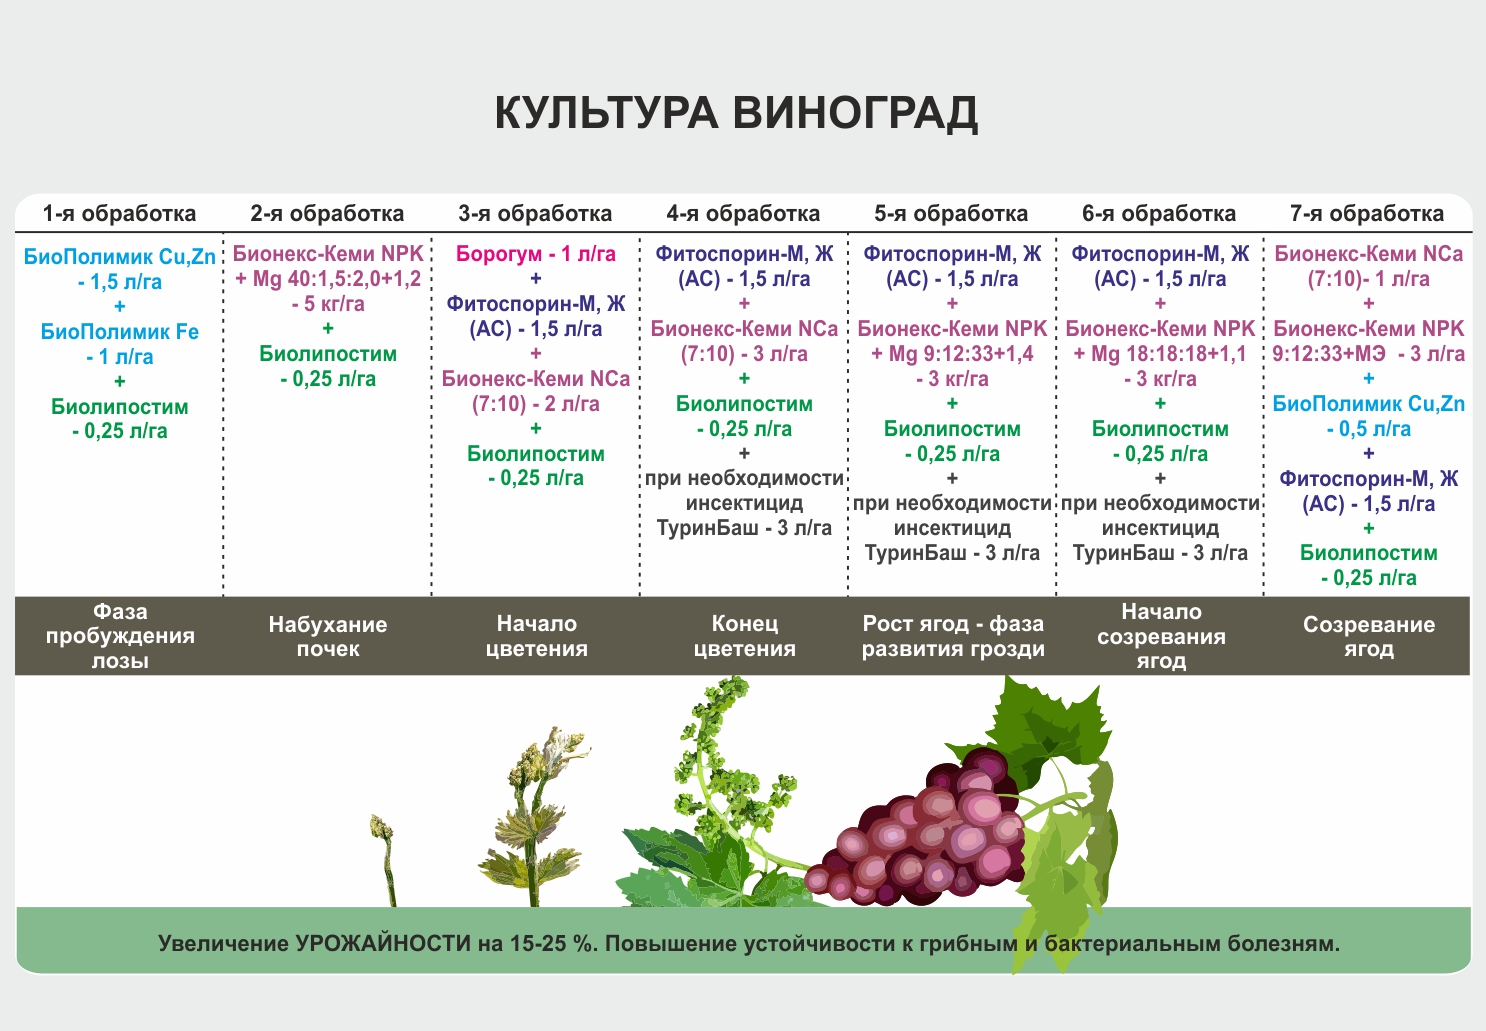 Виноград «софия»: описание сорта, фото и отзывы. основные плюсы и минусы, сравнение с аналогами, характеристики и особенности выращивания в регионах